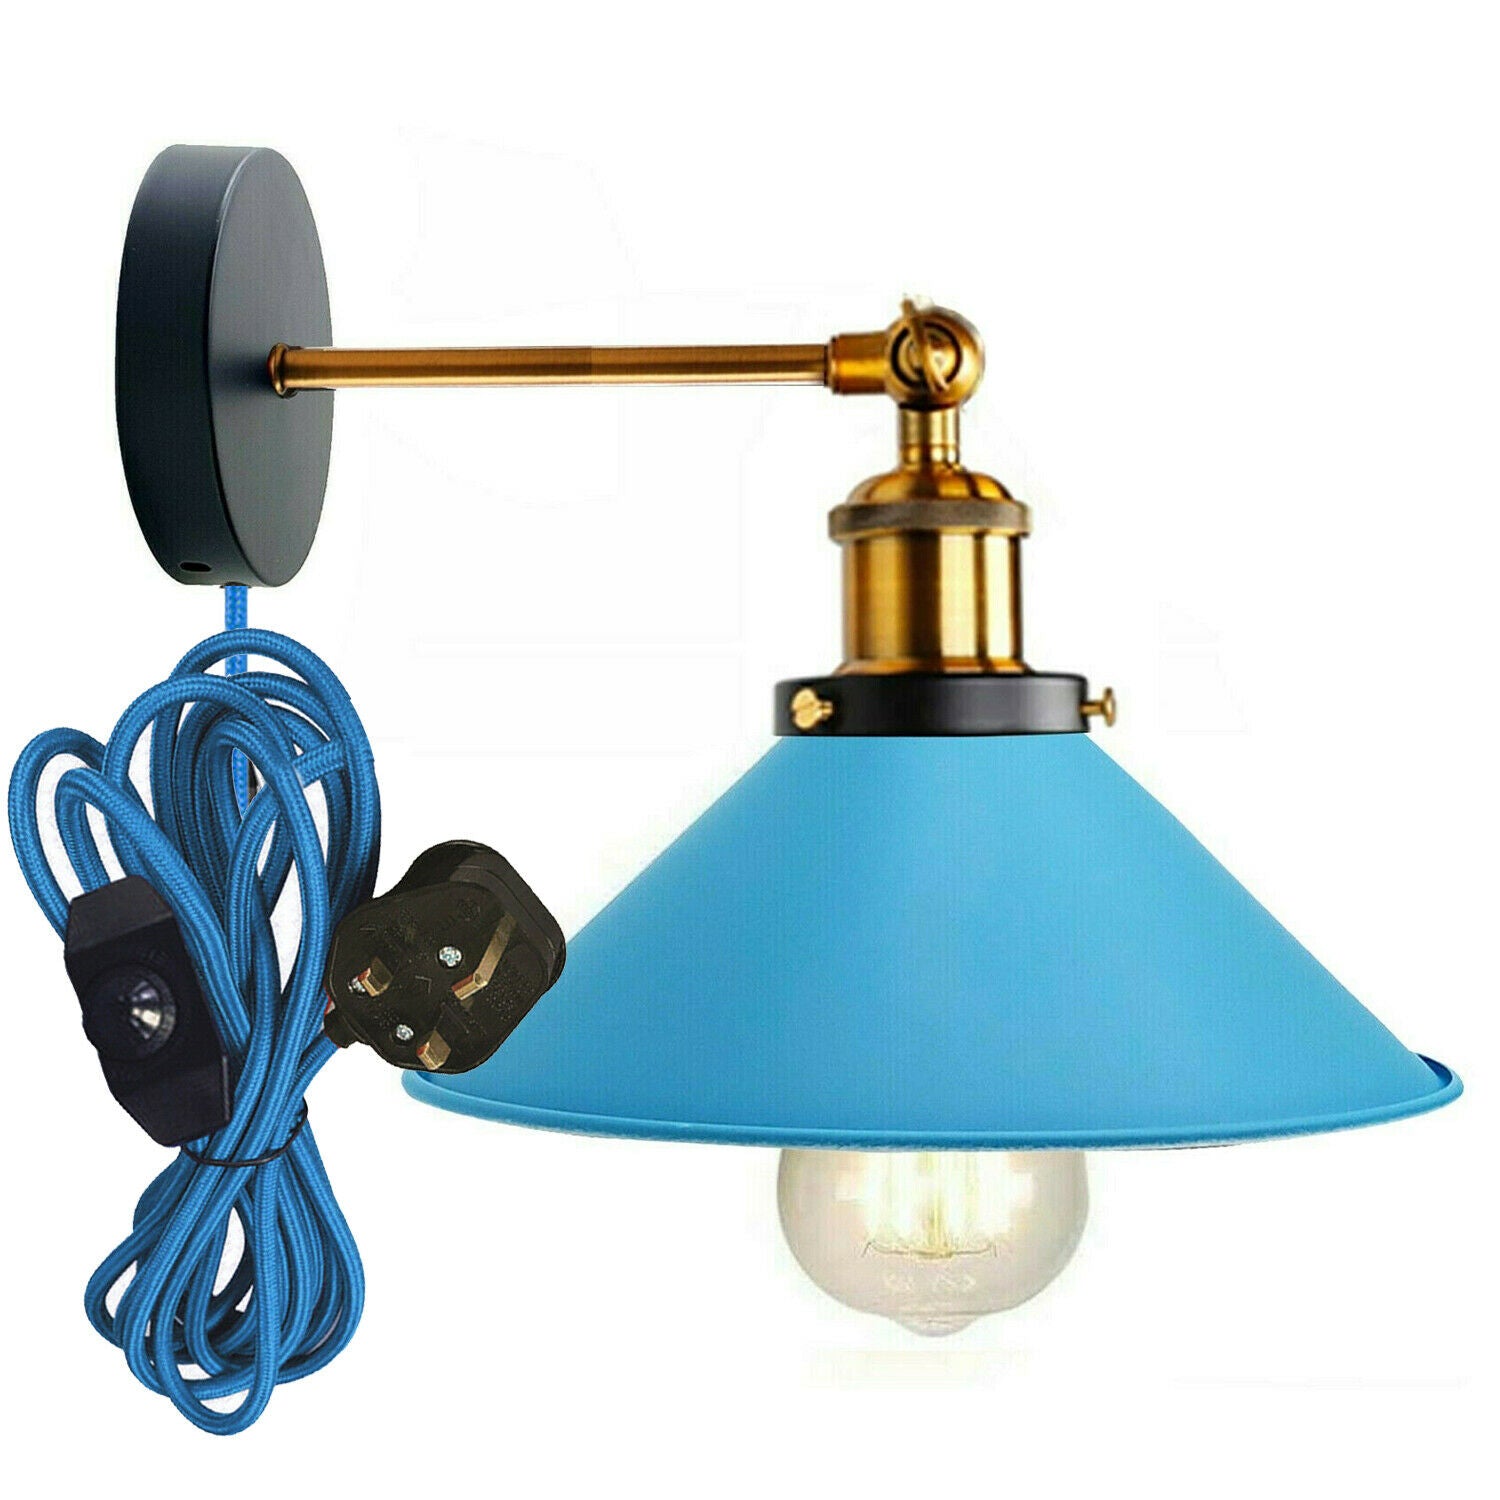  Wall Light Plug in Wall Lamp